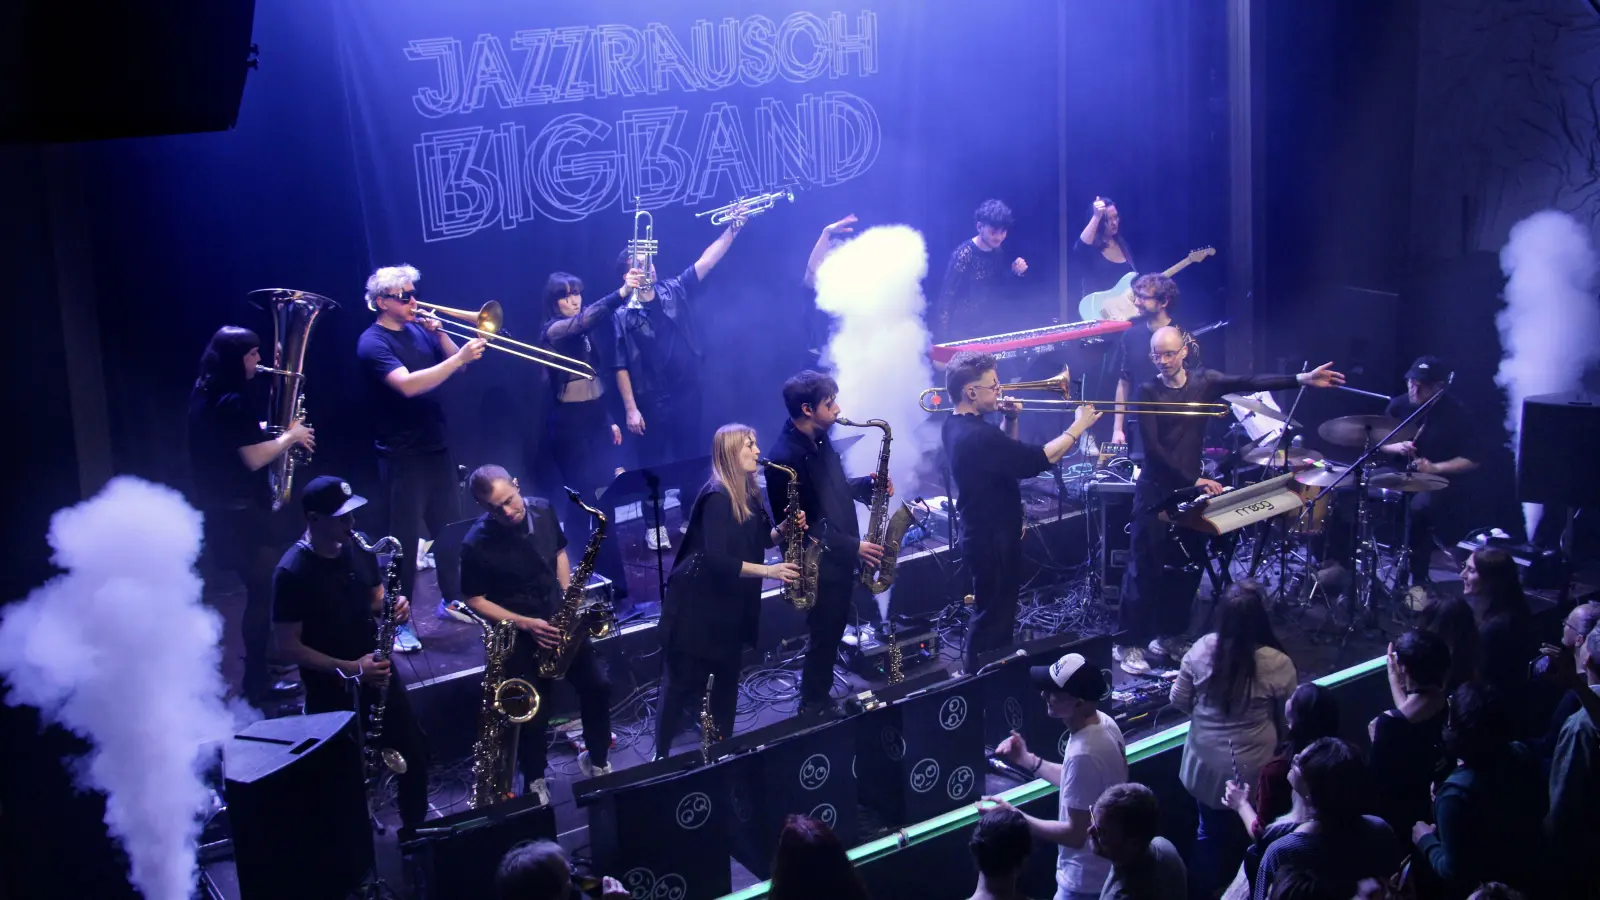 Macht mächtig Dampf: die Jazzrausch Bigband. (Foto: Jens Plackner)